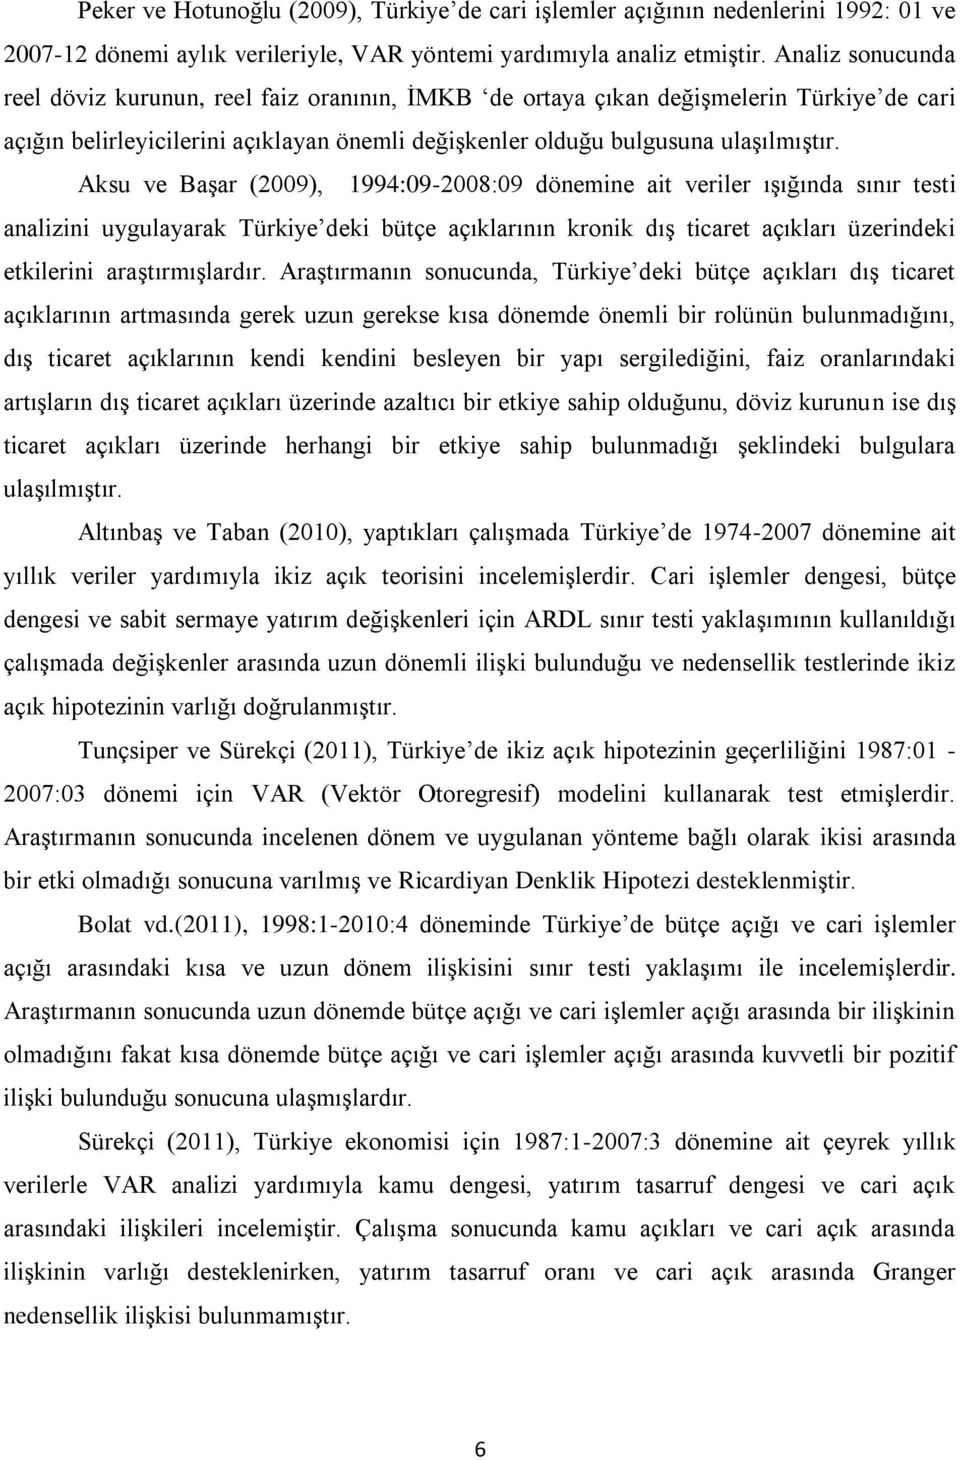 Aksu ve Başar (2009), 1994:09-2008:09 dönemine ait veriler ışığında sınır testi analizini uygulayarak Türkiye deki bütçe açıklarının kronik dış ticaret açıkları üzerindeki etkilerini araştırmışlardır.